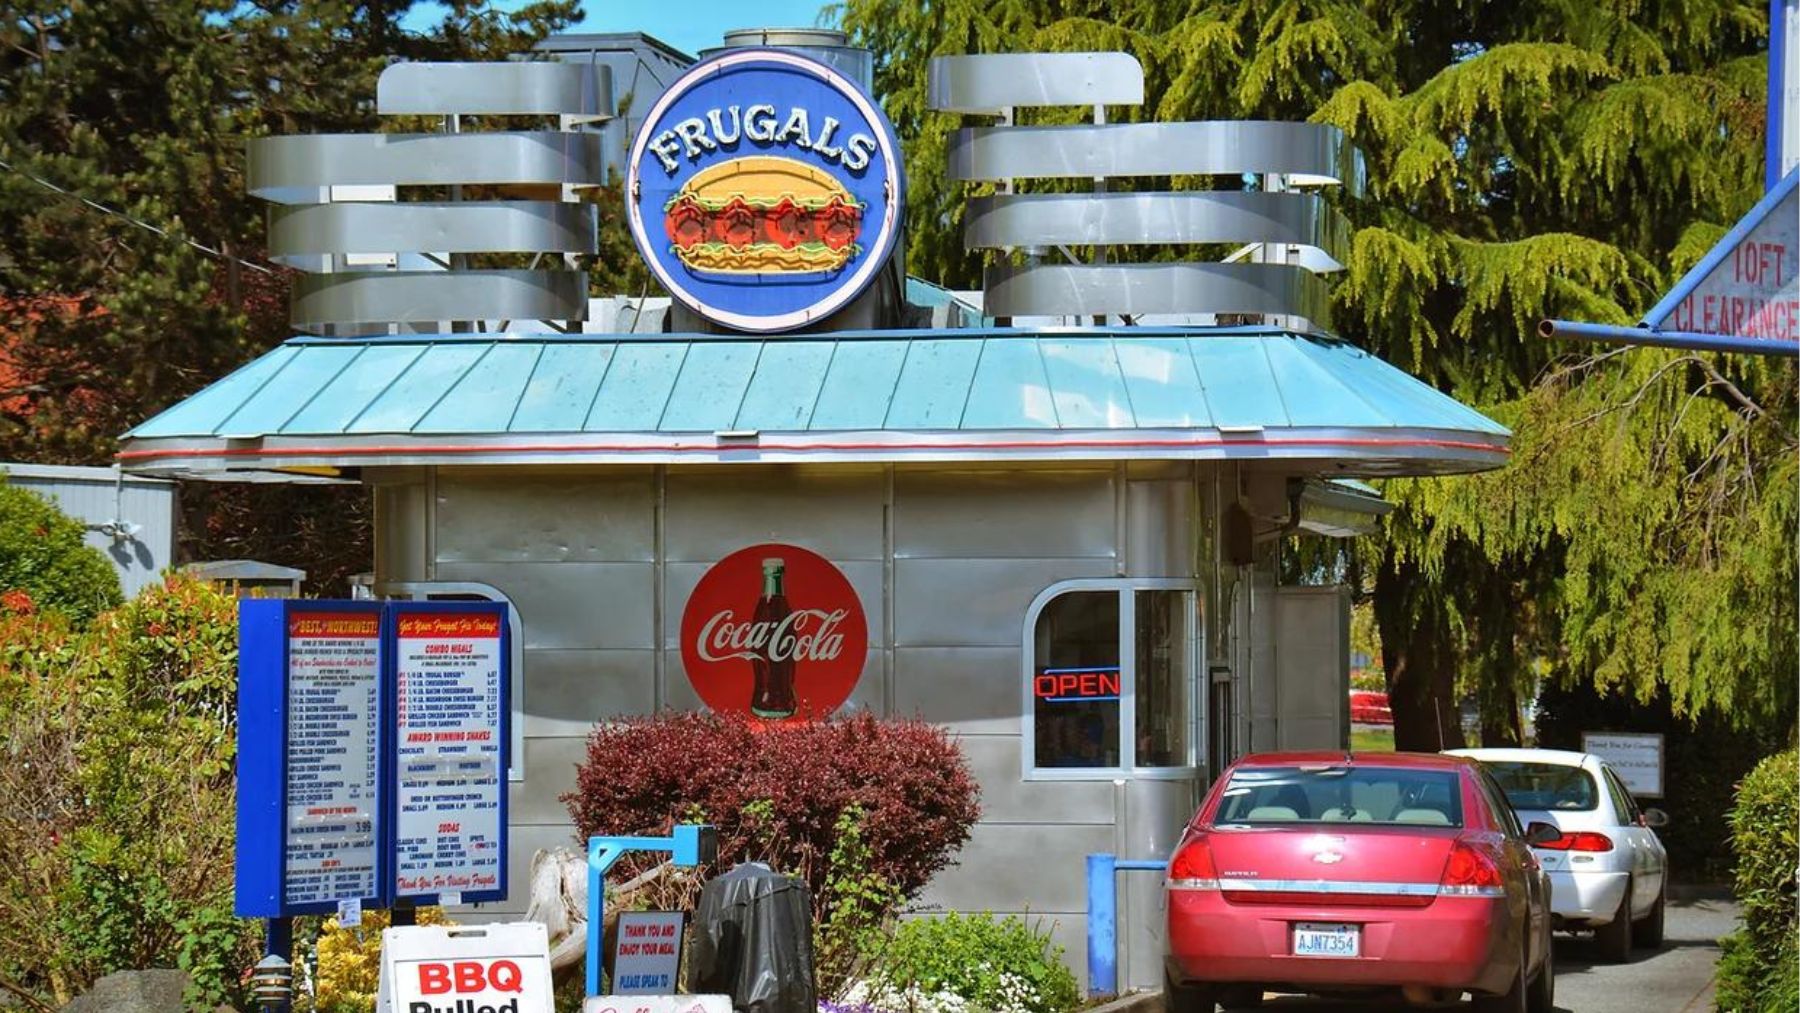 Un restaurante de la cadena Frugals en Estados Unidos.